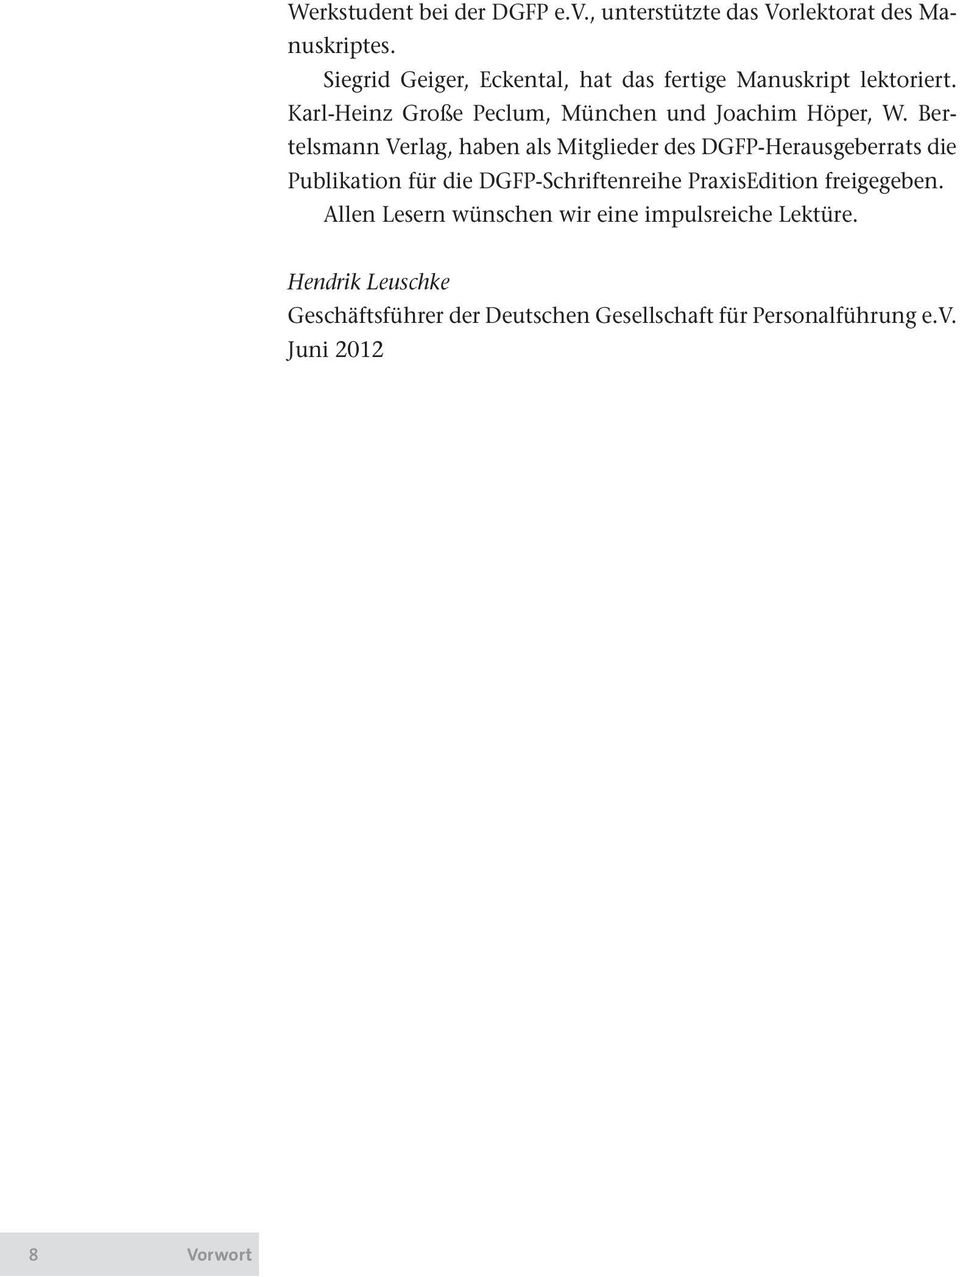 Bertelsmann Verlag, haben als Mitglieder des DGFP-Herausgeberrats die Publikation für die DGFP-Schriftenreihe